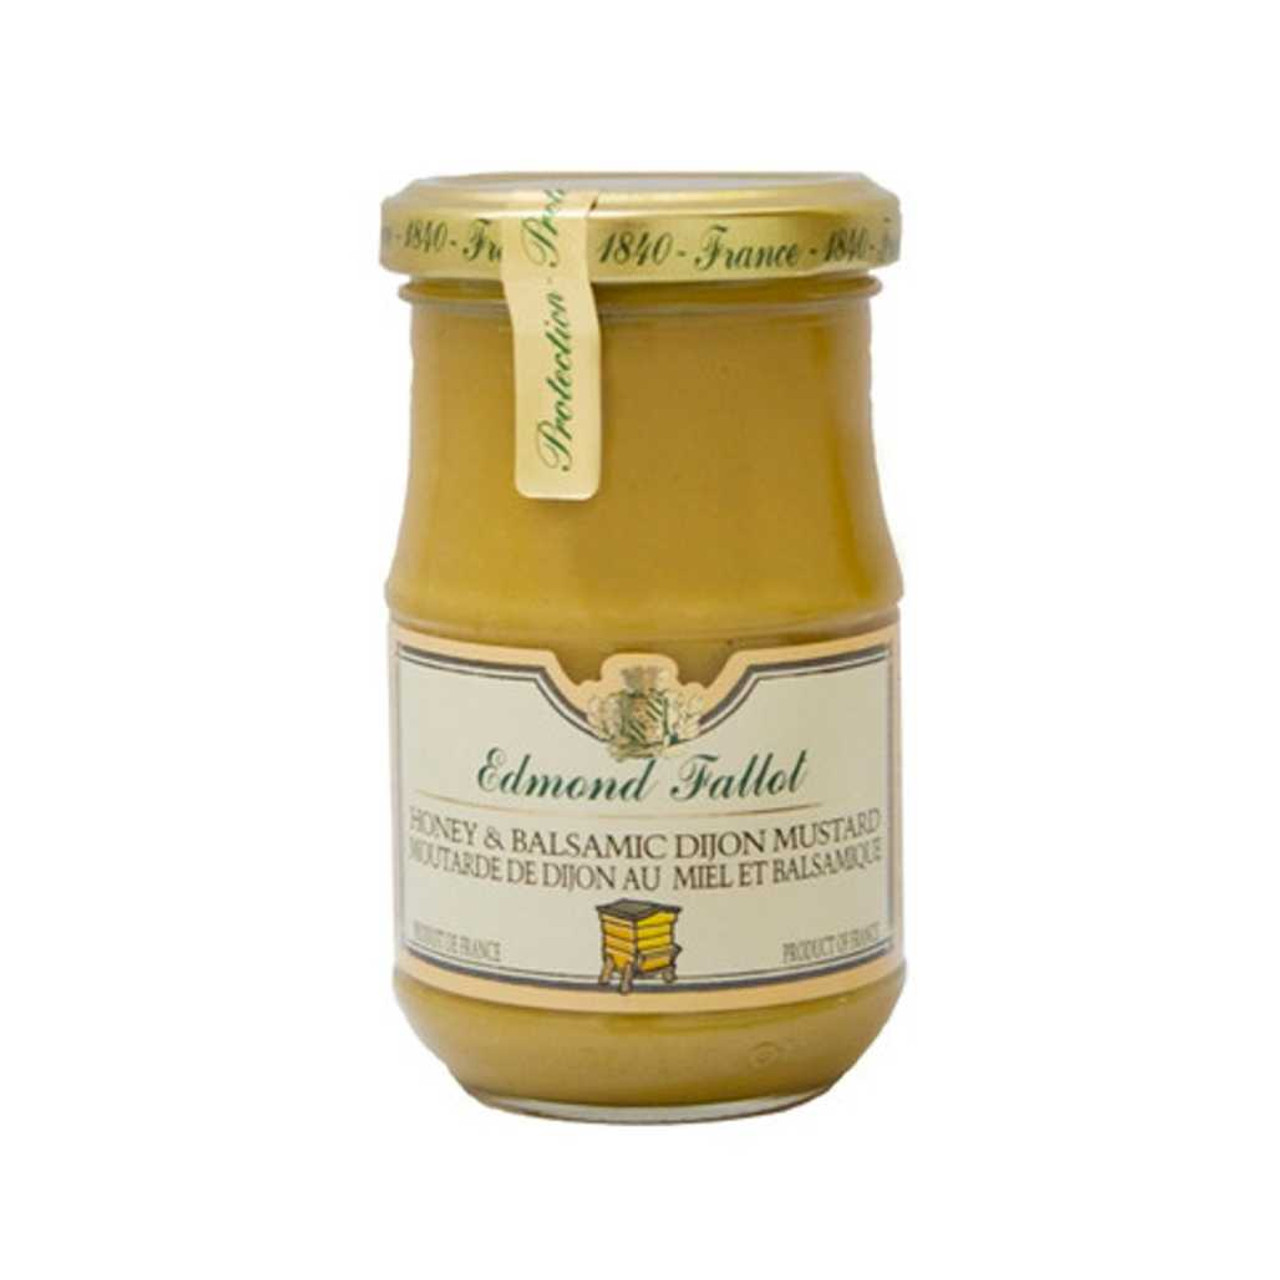 Moutarde de Dijon - Edmond Fallot - 500 g